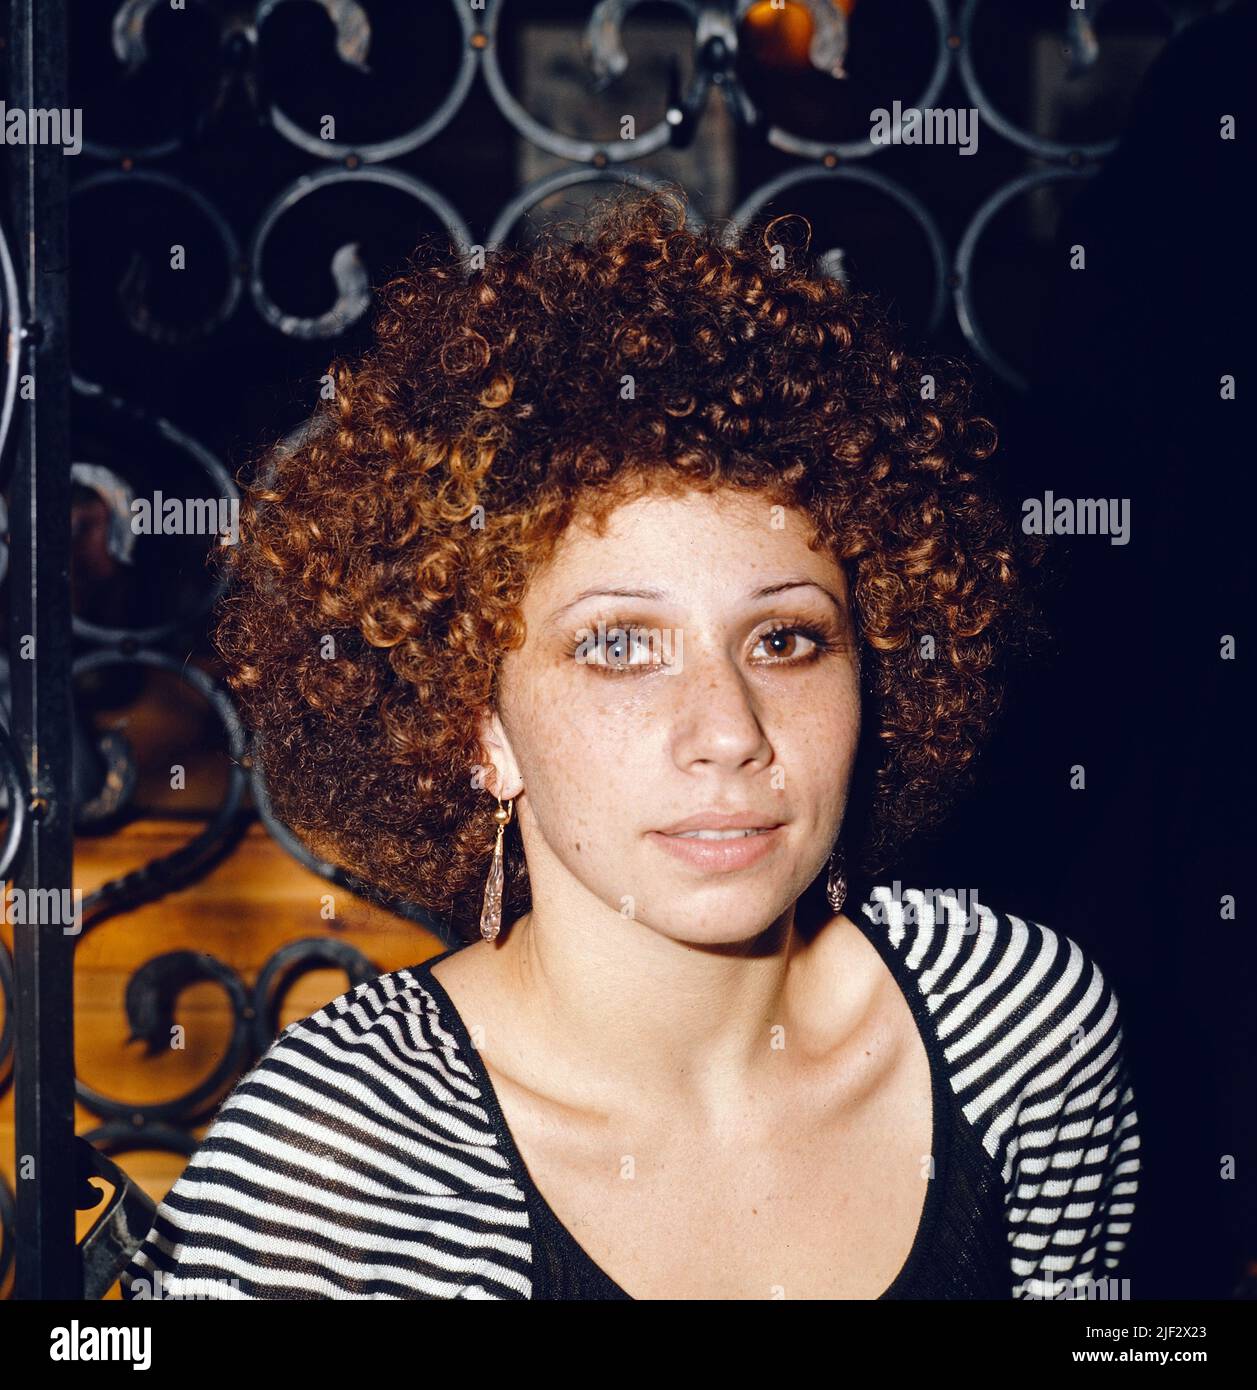 Julia Migenes, amerikanische Opernsängerin und Schauspielerin, Portrait, Deutschland, circa 1979. Julia Migenes, American Opera singer and actress, portrait, Germany, circa 1979. Stock Photo